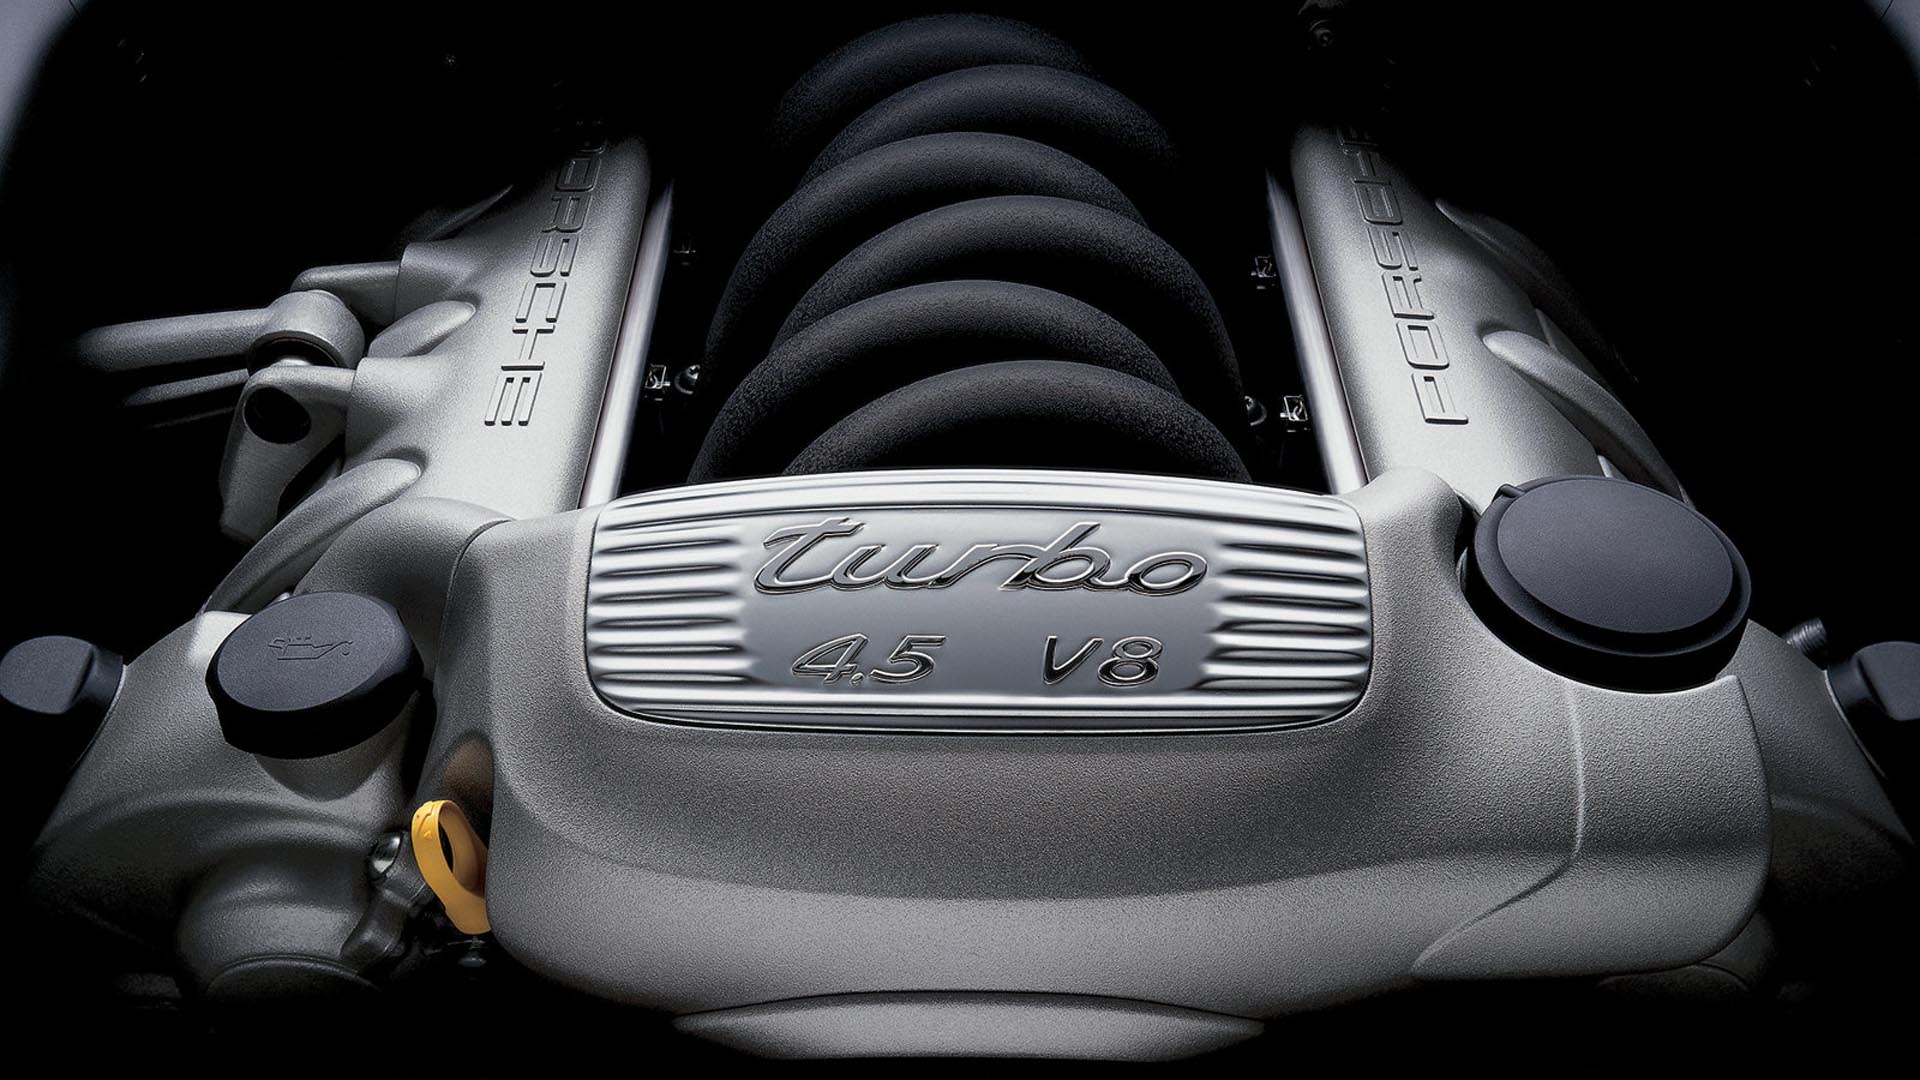 Porsche Cayenne Engine Bay 4.5 V8